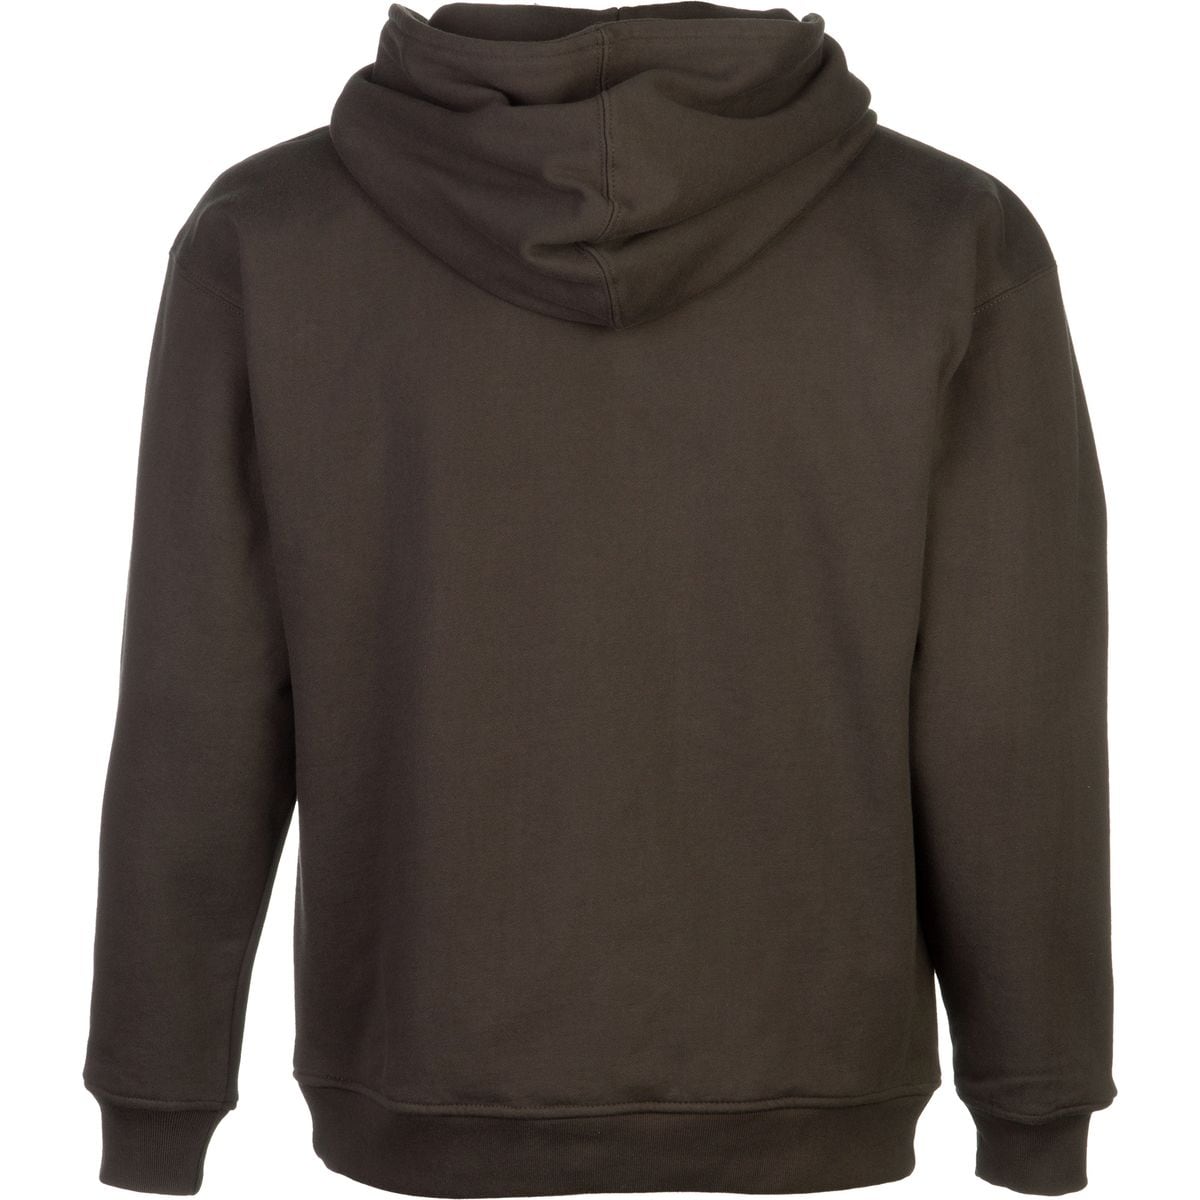 Arborwear Double Thick Full-Zip Hooded Sweatshirt - Men's | eBay